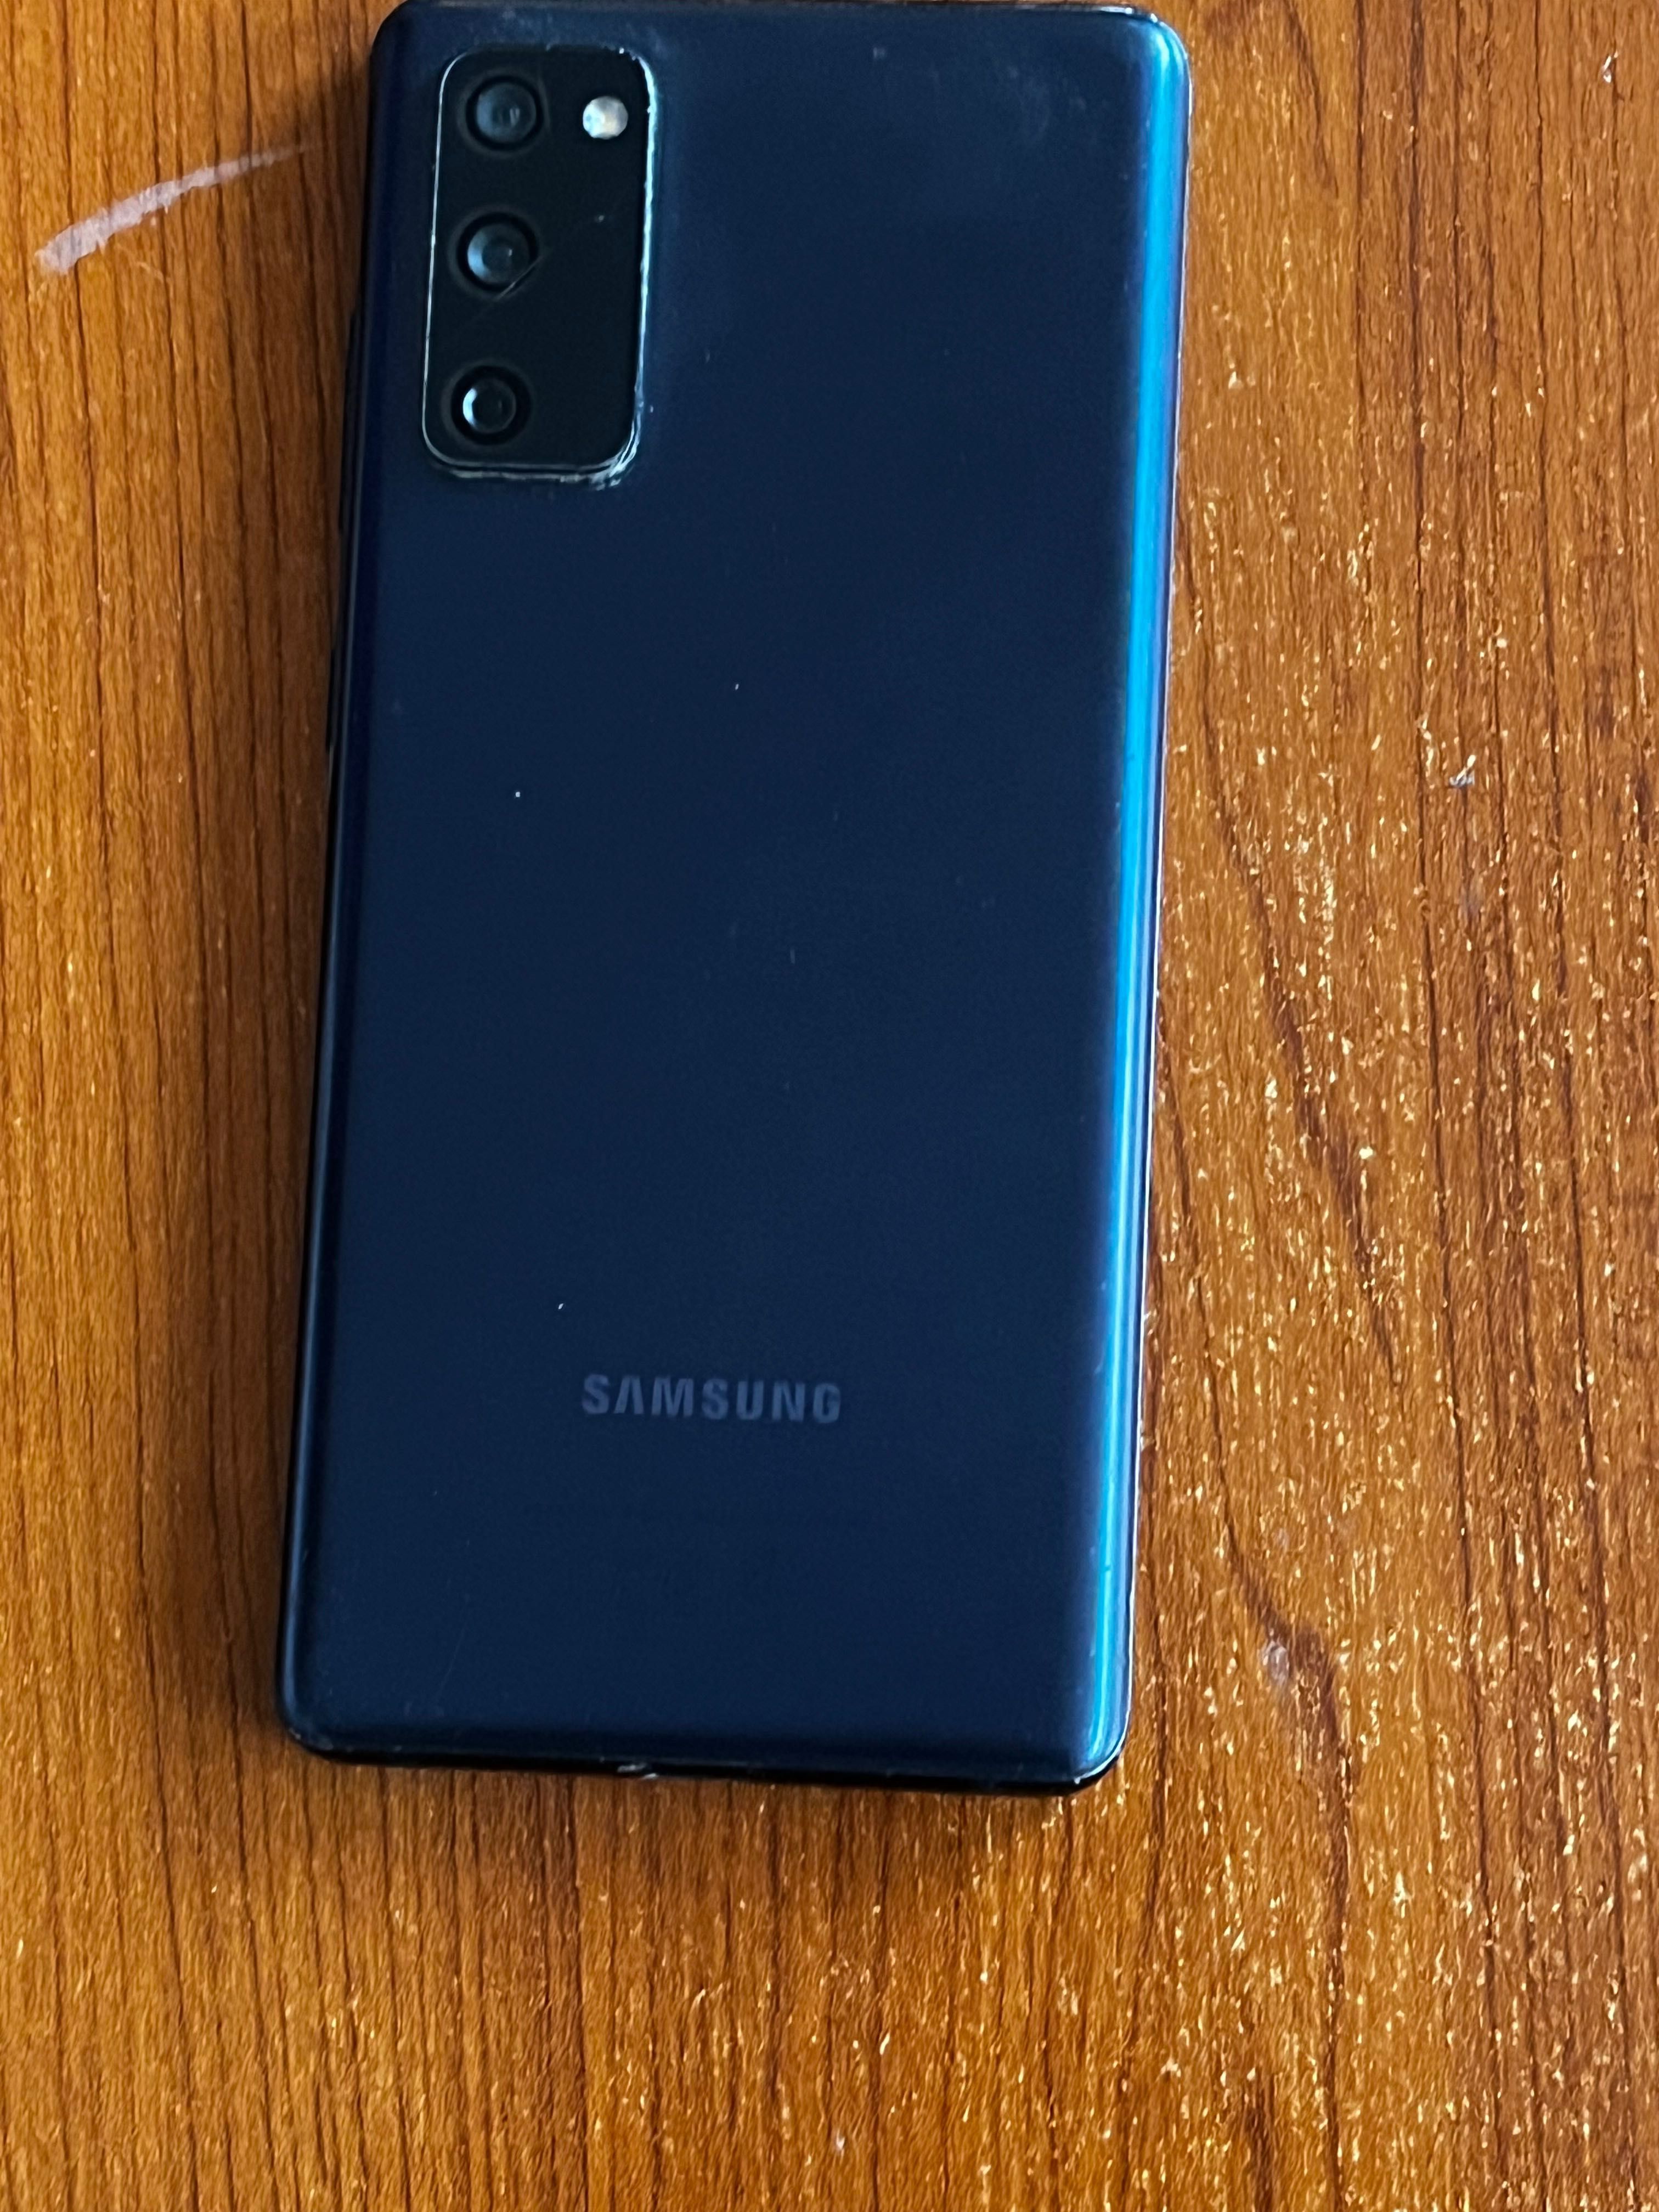 Samsung Galaxy S20 FE DUAL SIM 128GB